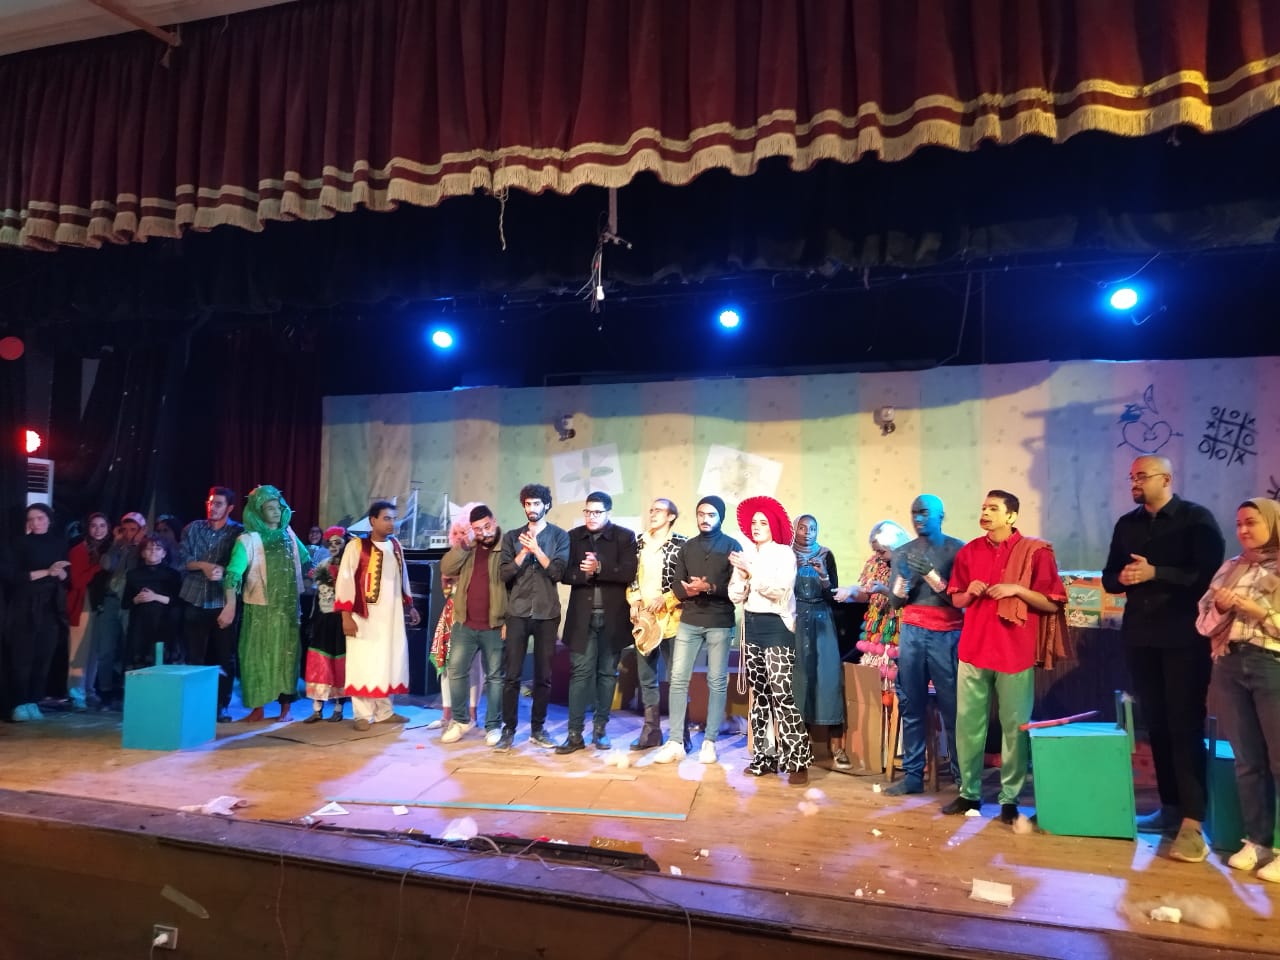 فريق صيدلة القاهرة يعرض مسرحيته "خلي بالك من وودى" ضمن مهرجان المسرح الجامعي